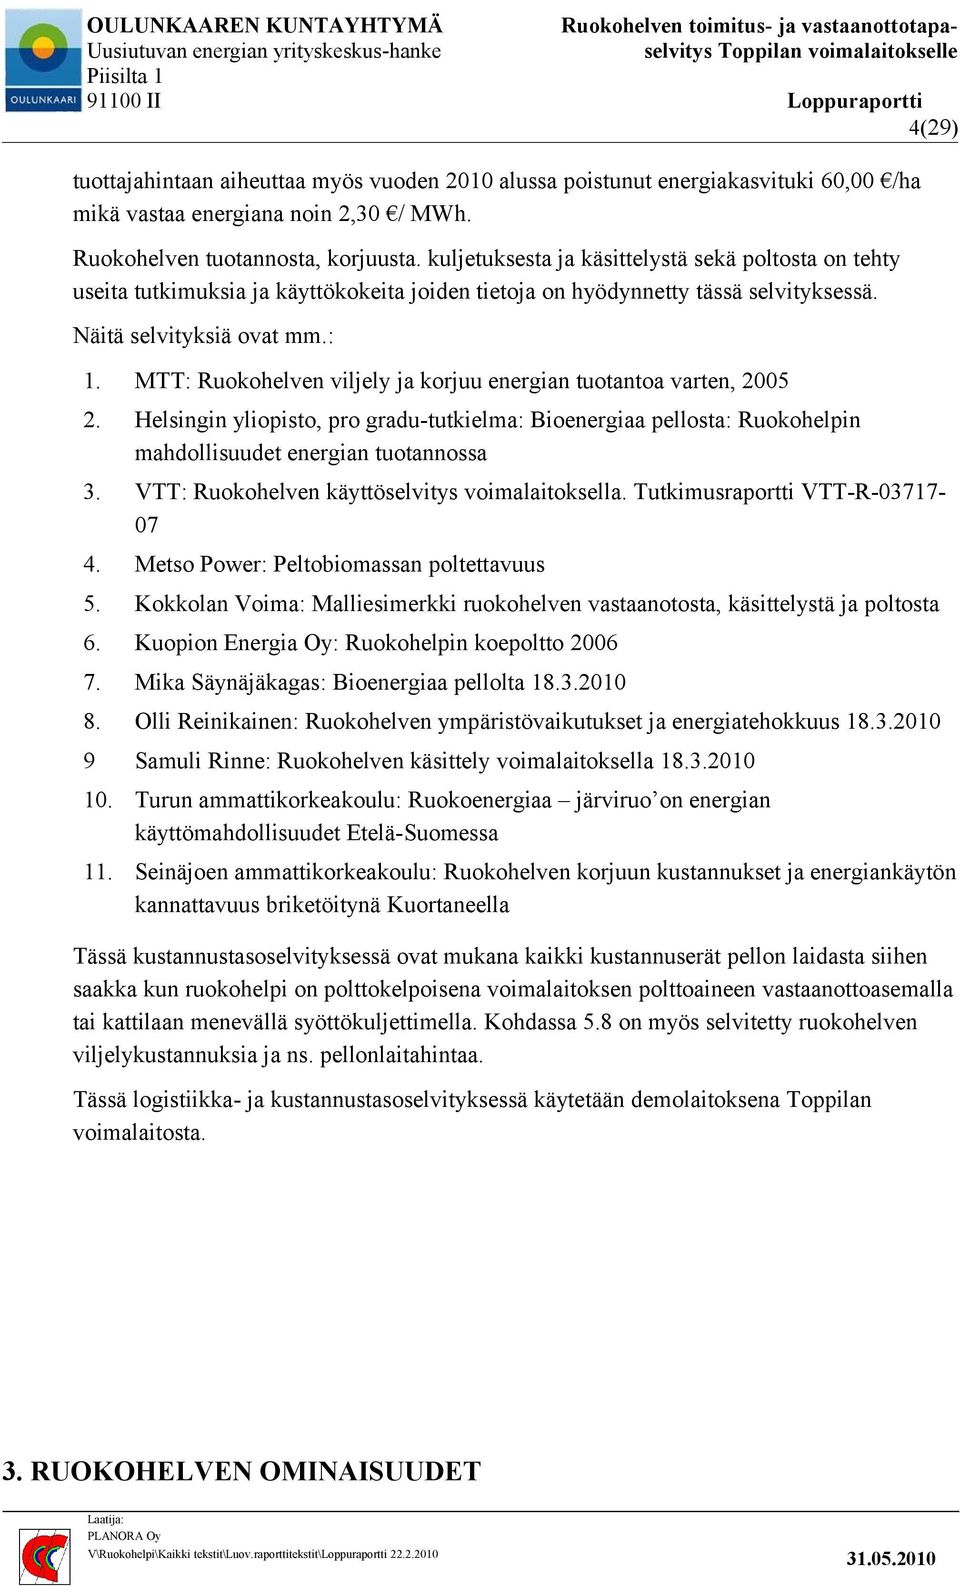 MTT: Ruokohelven viljely ja korjuu energian tuotantoa varten, 2005 2. Helsingin yliopisto, pro gradu-tutkielma: Bioenergiaa pellosta: Ruokohelpin mahdollisuudet energian tuotannossa 3.